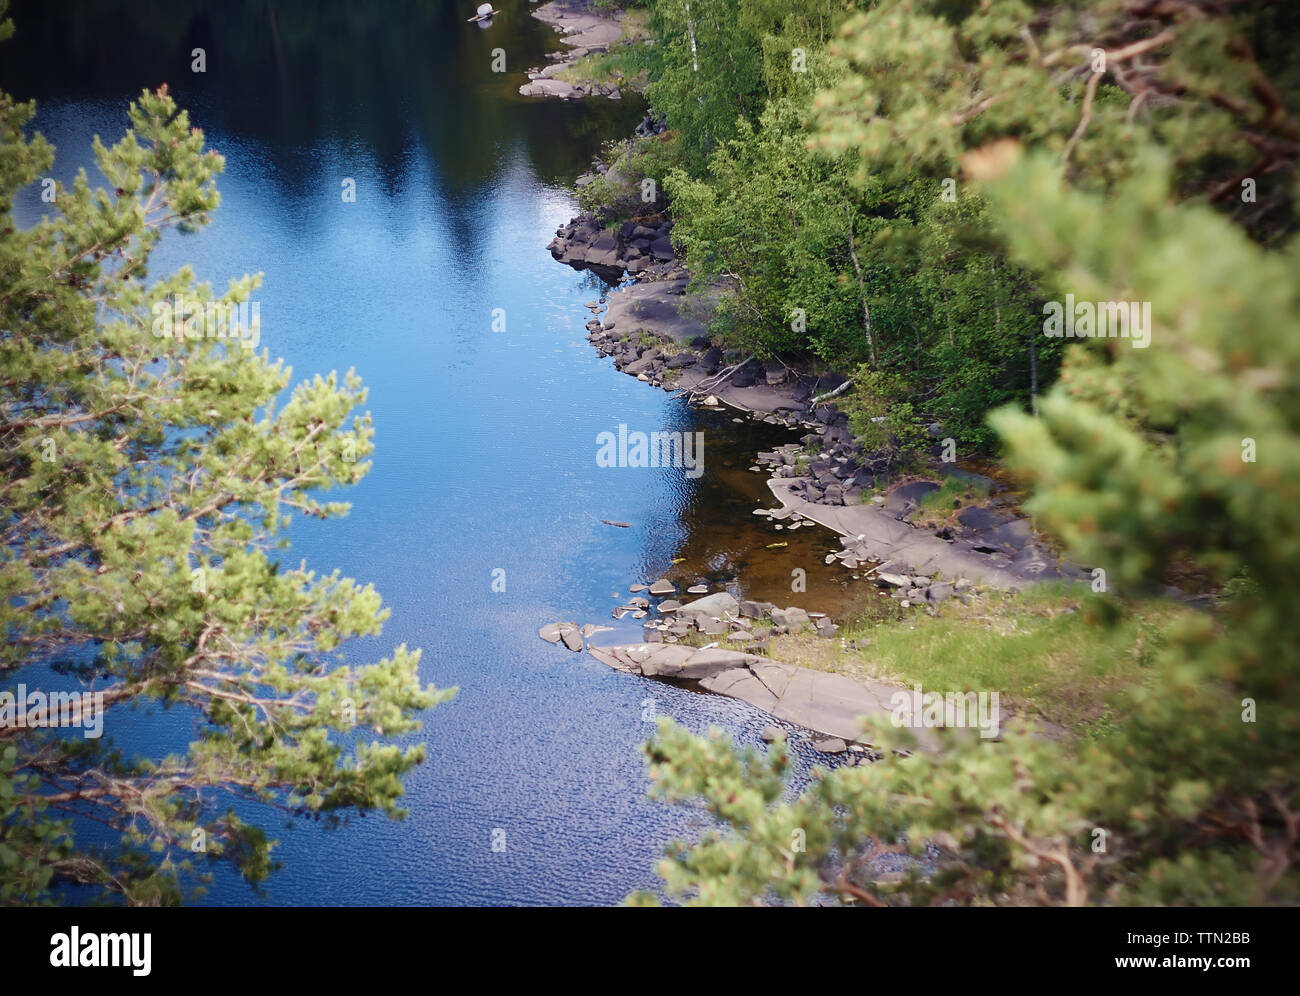 Bosque limpio lago entre las costas rocosas, reflejando el azul del cielo, cubiertos con pequeñas ondulaciones. Foto de stock